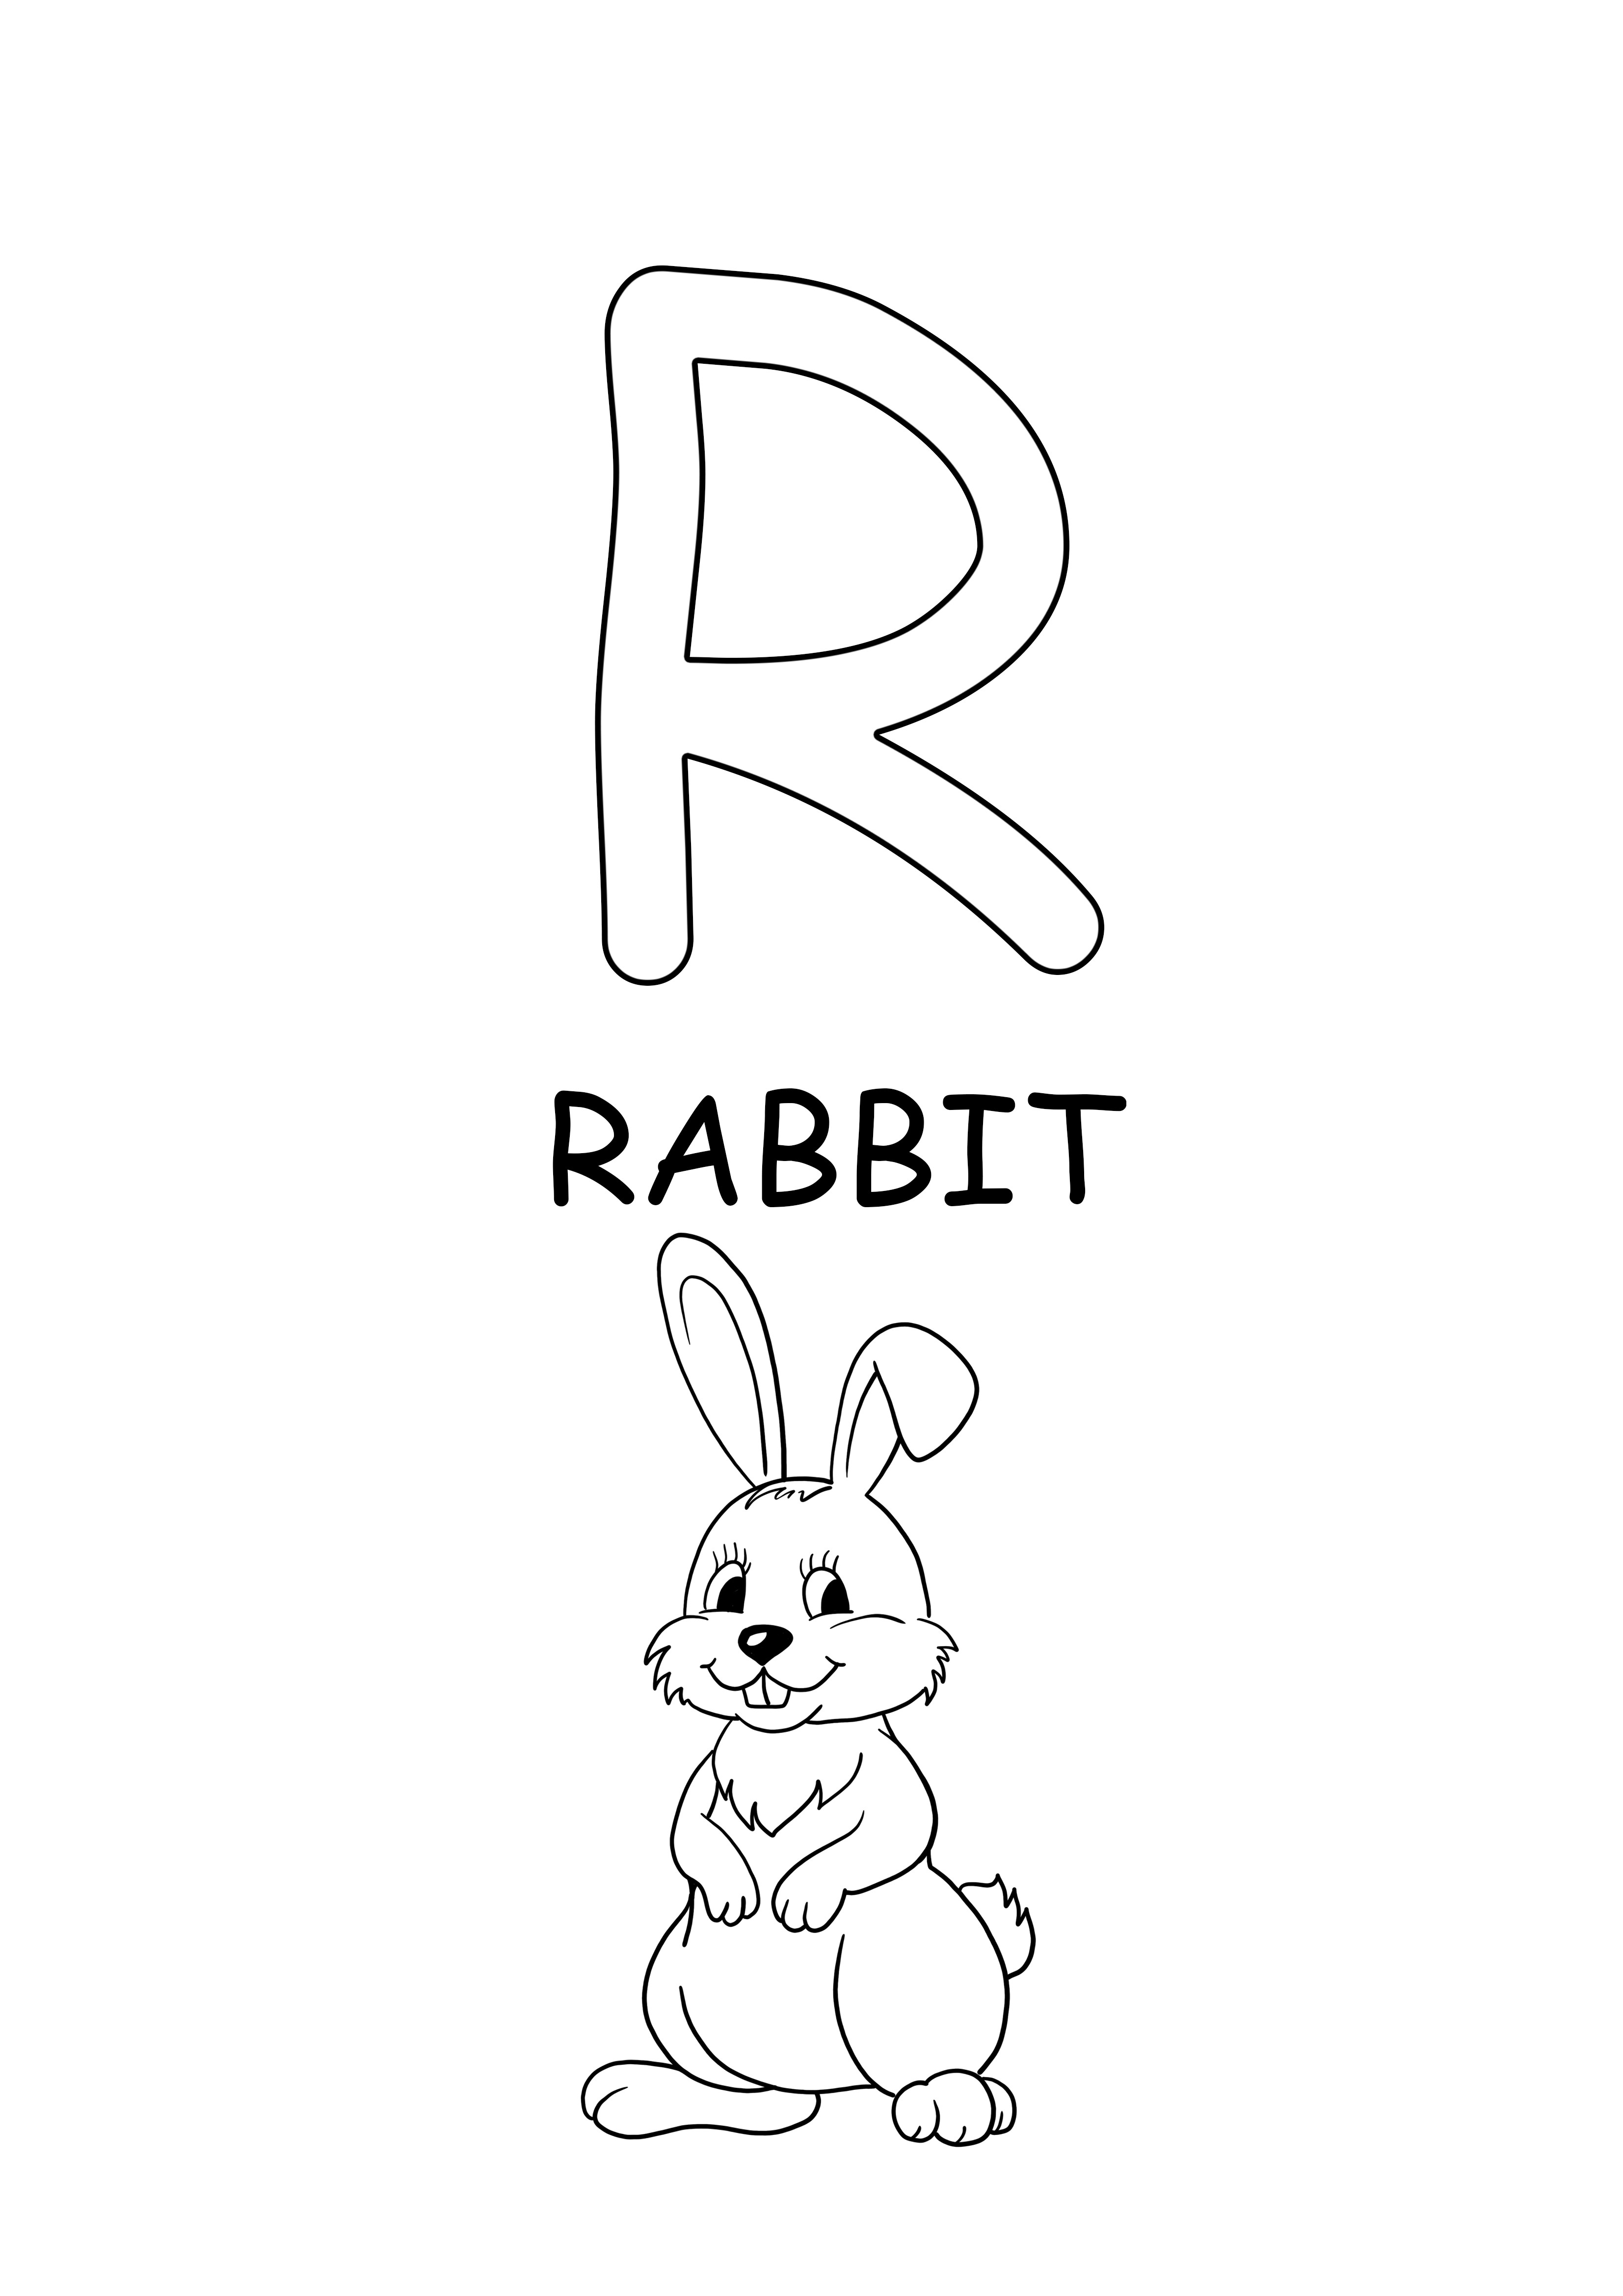 büyük harf kelime-tavşan boyama ve ücretsiz yazdırılabilir